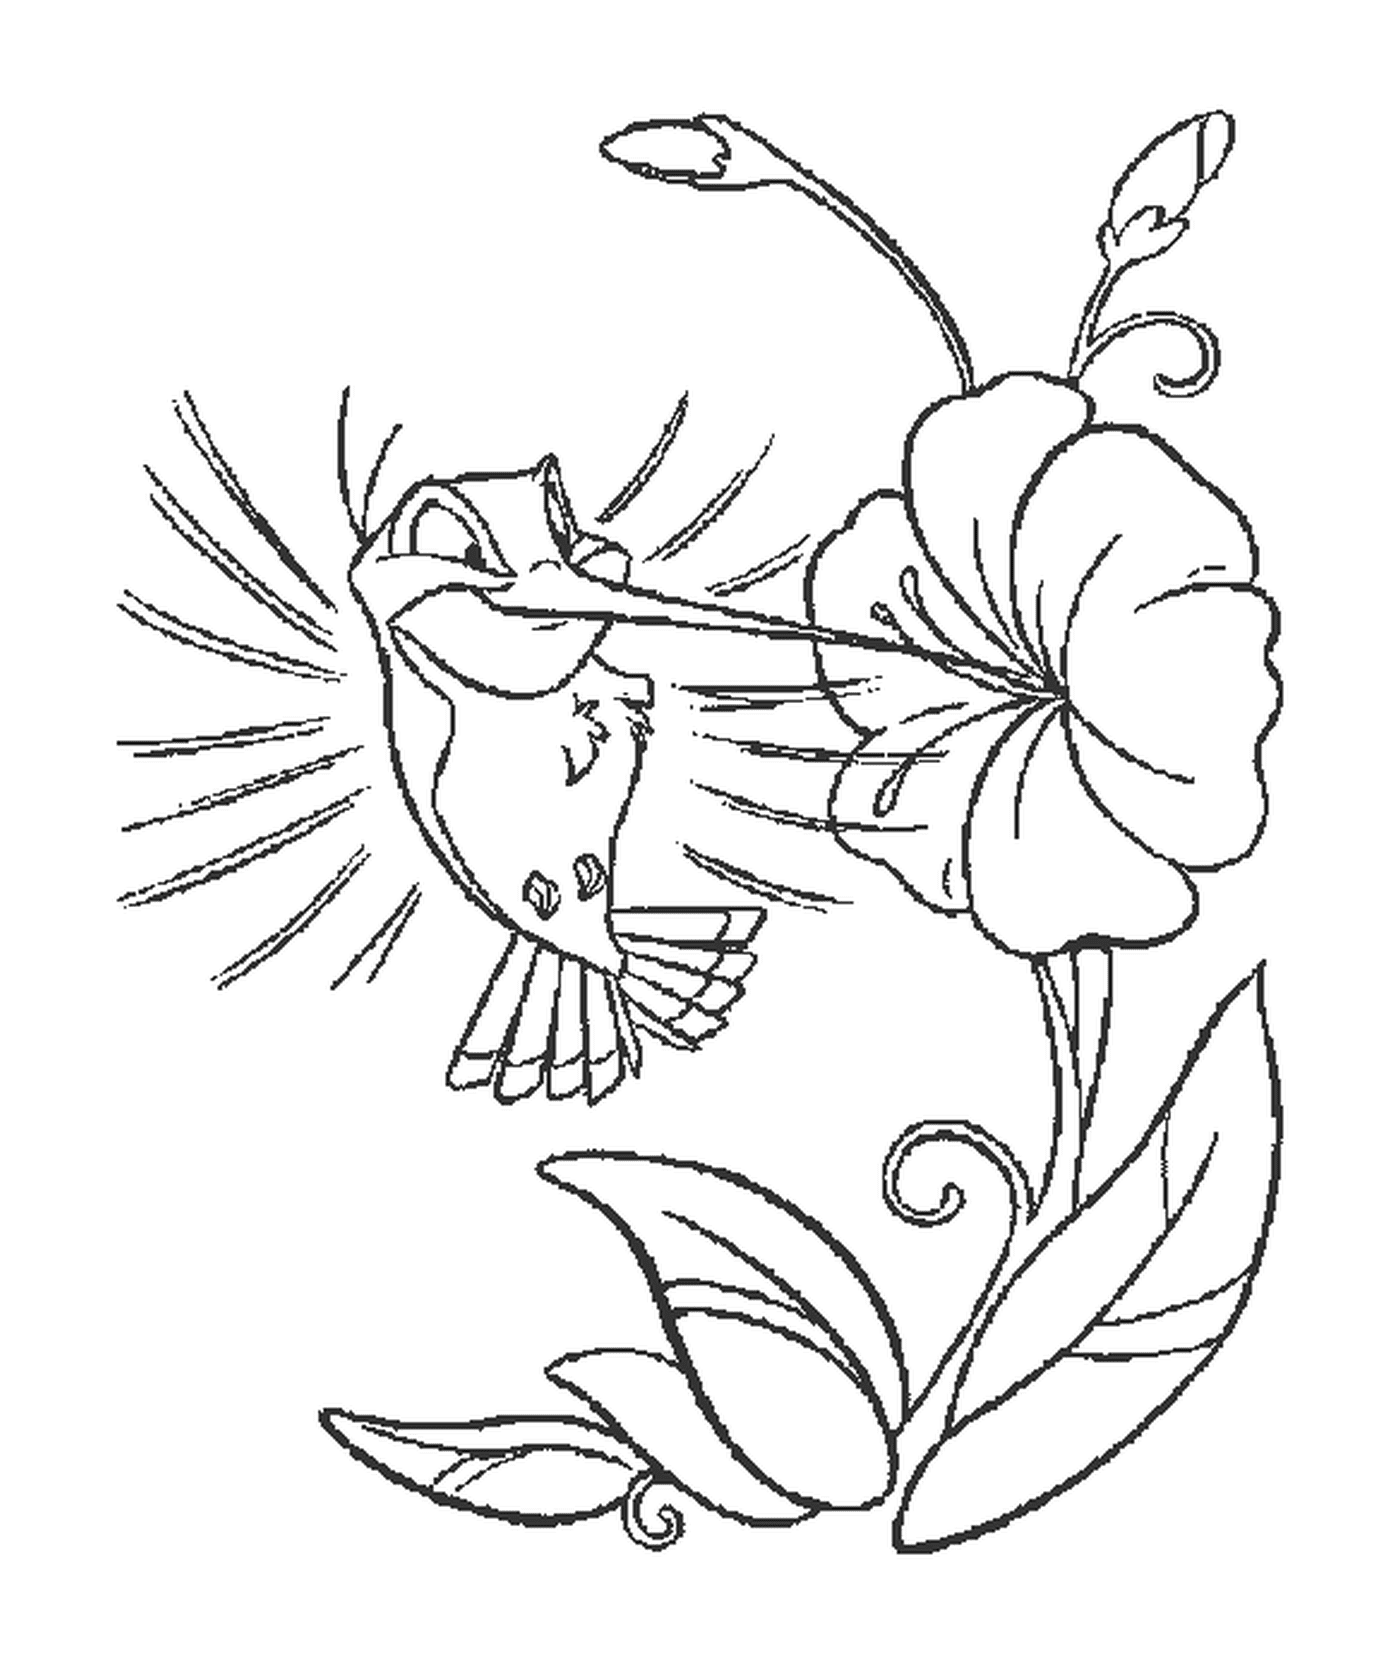  Un colibrí cerca de una flor 